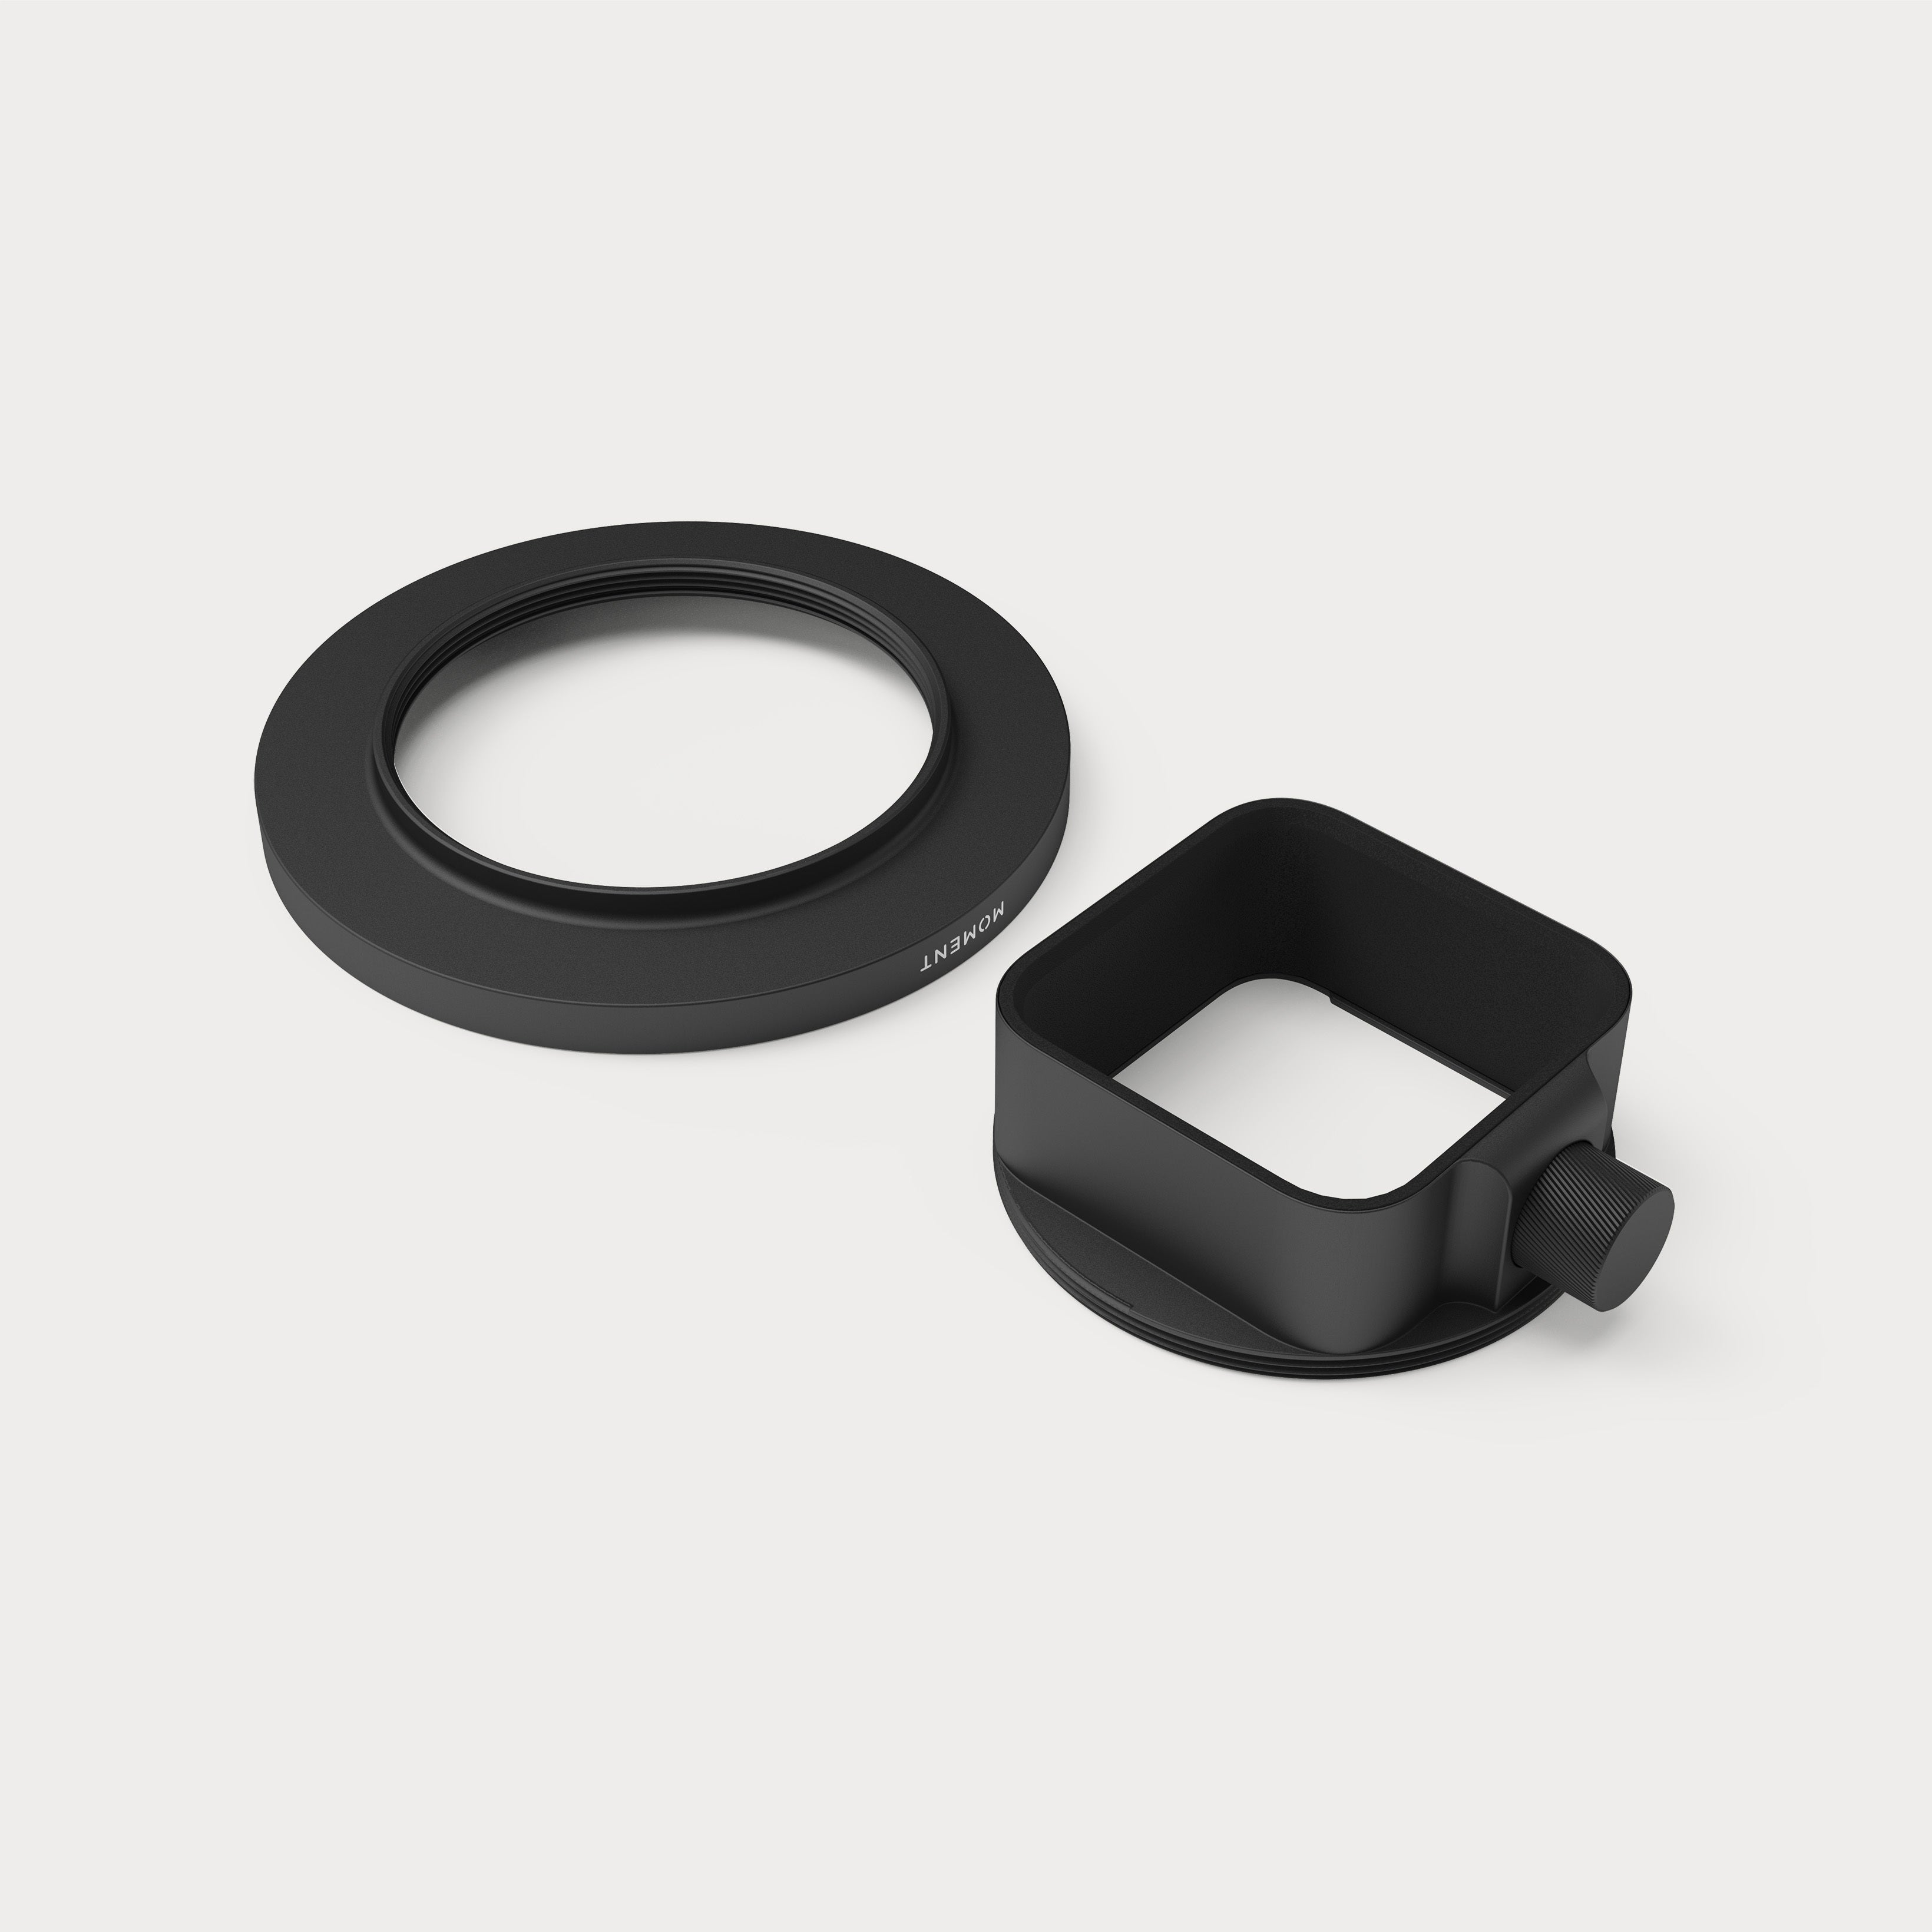 Lens Filter Mount for T-Series Lenses